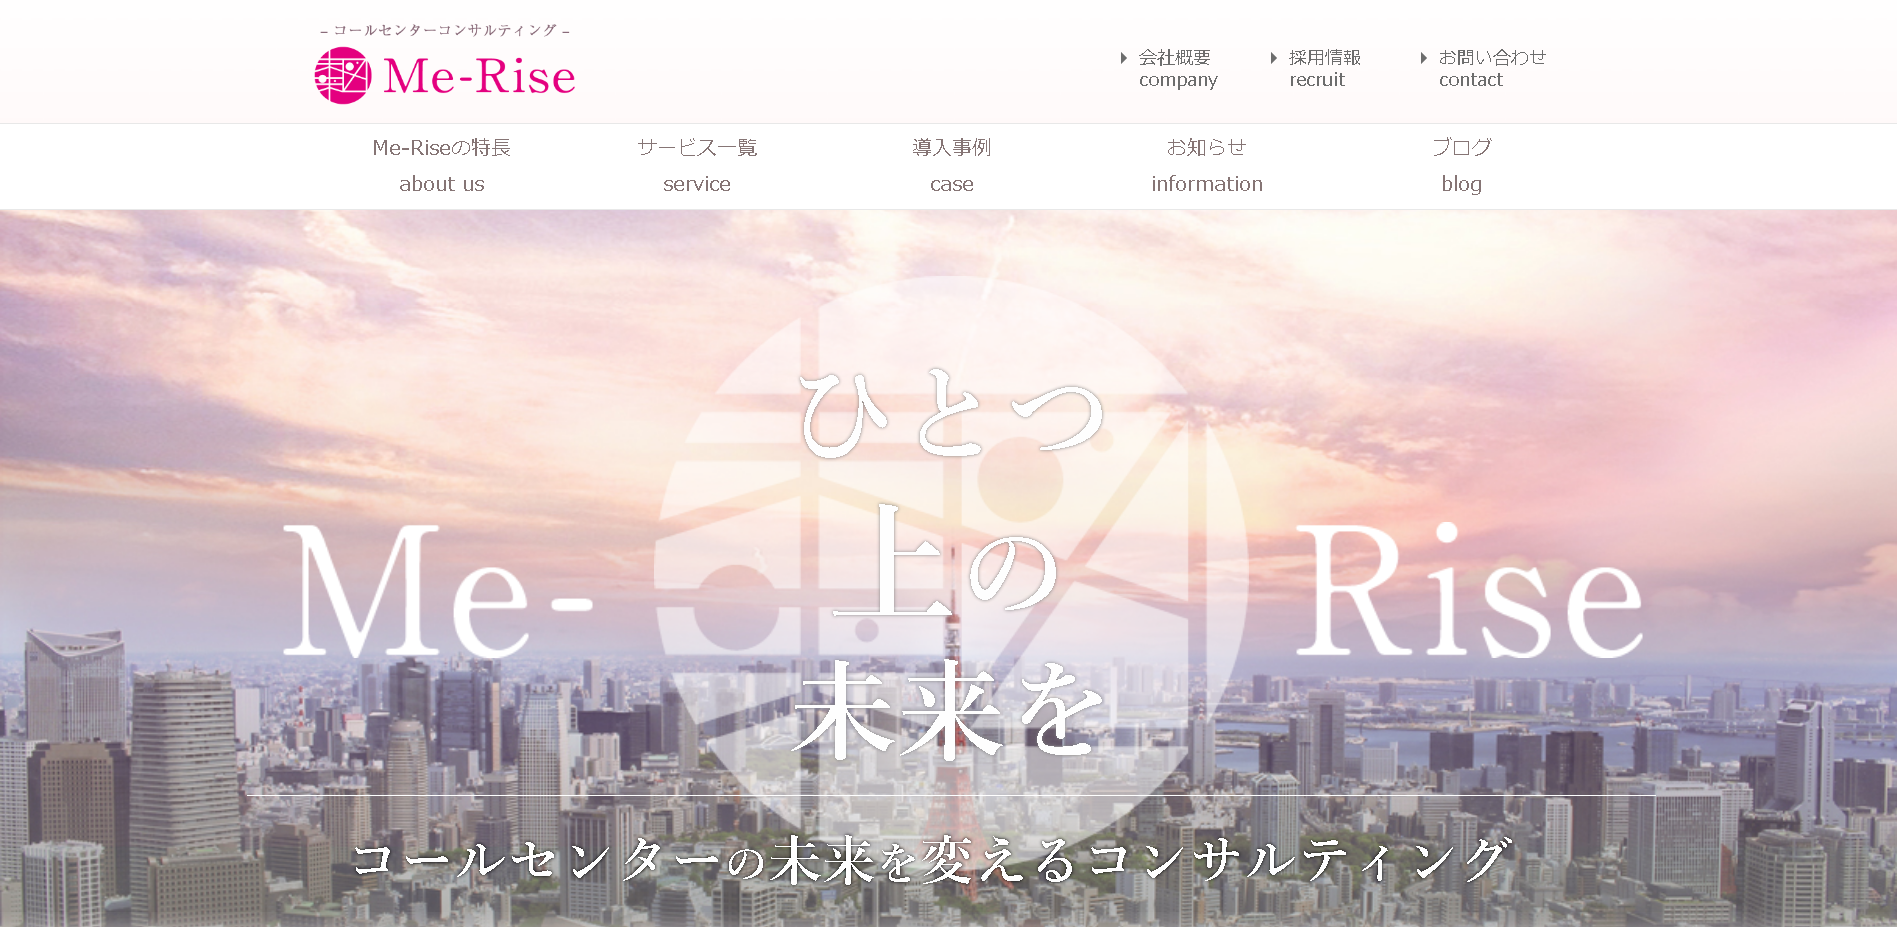 株式会社Me-Riseの株式会社Me-Riseサービス